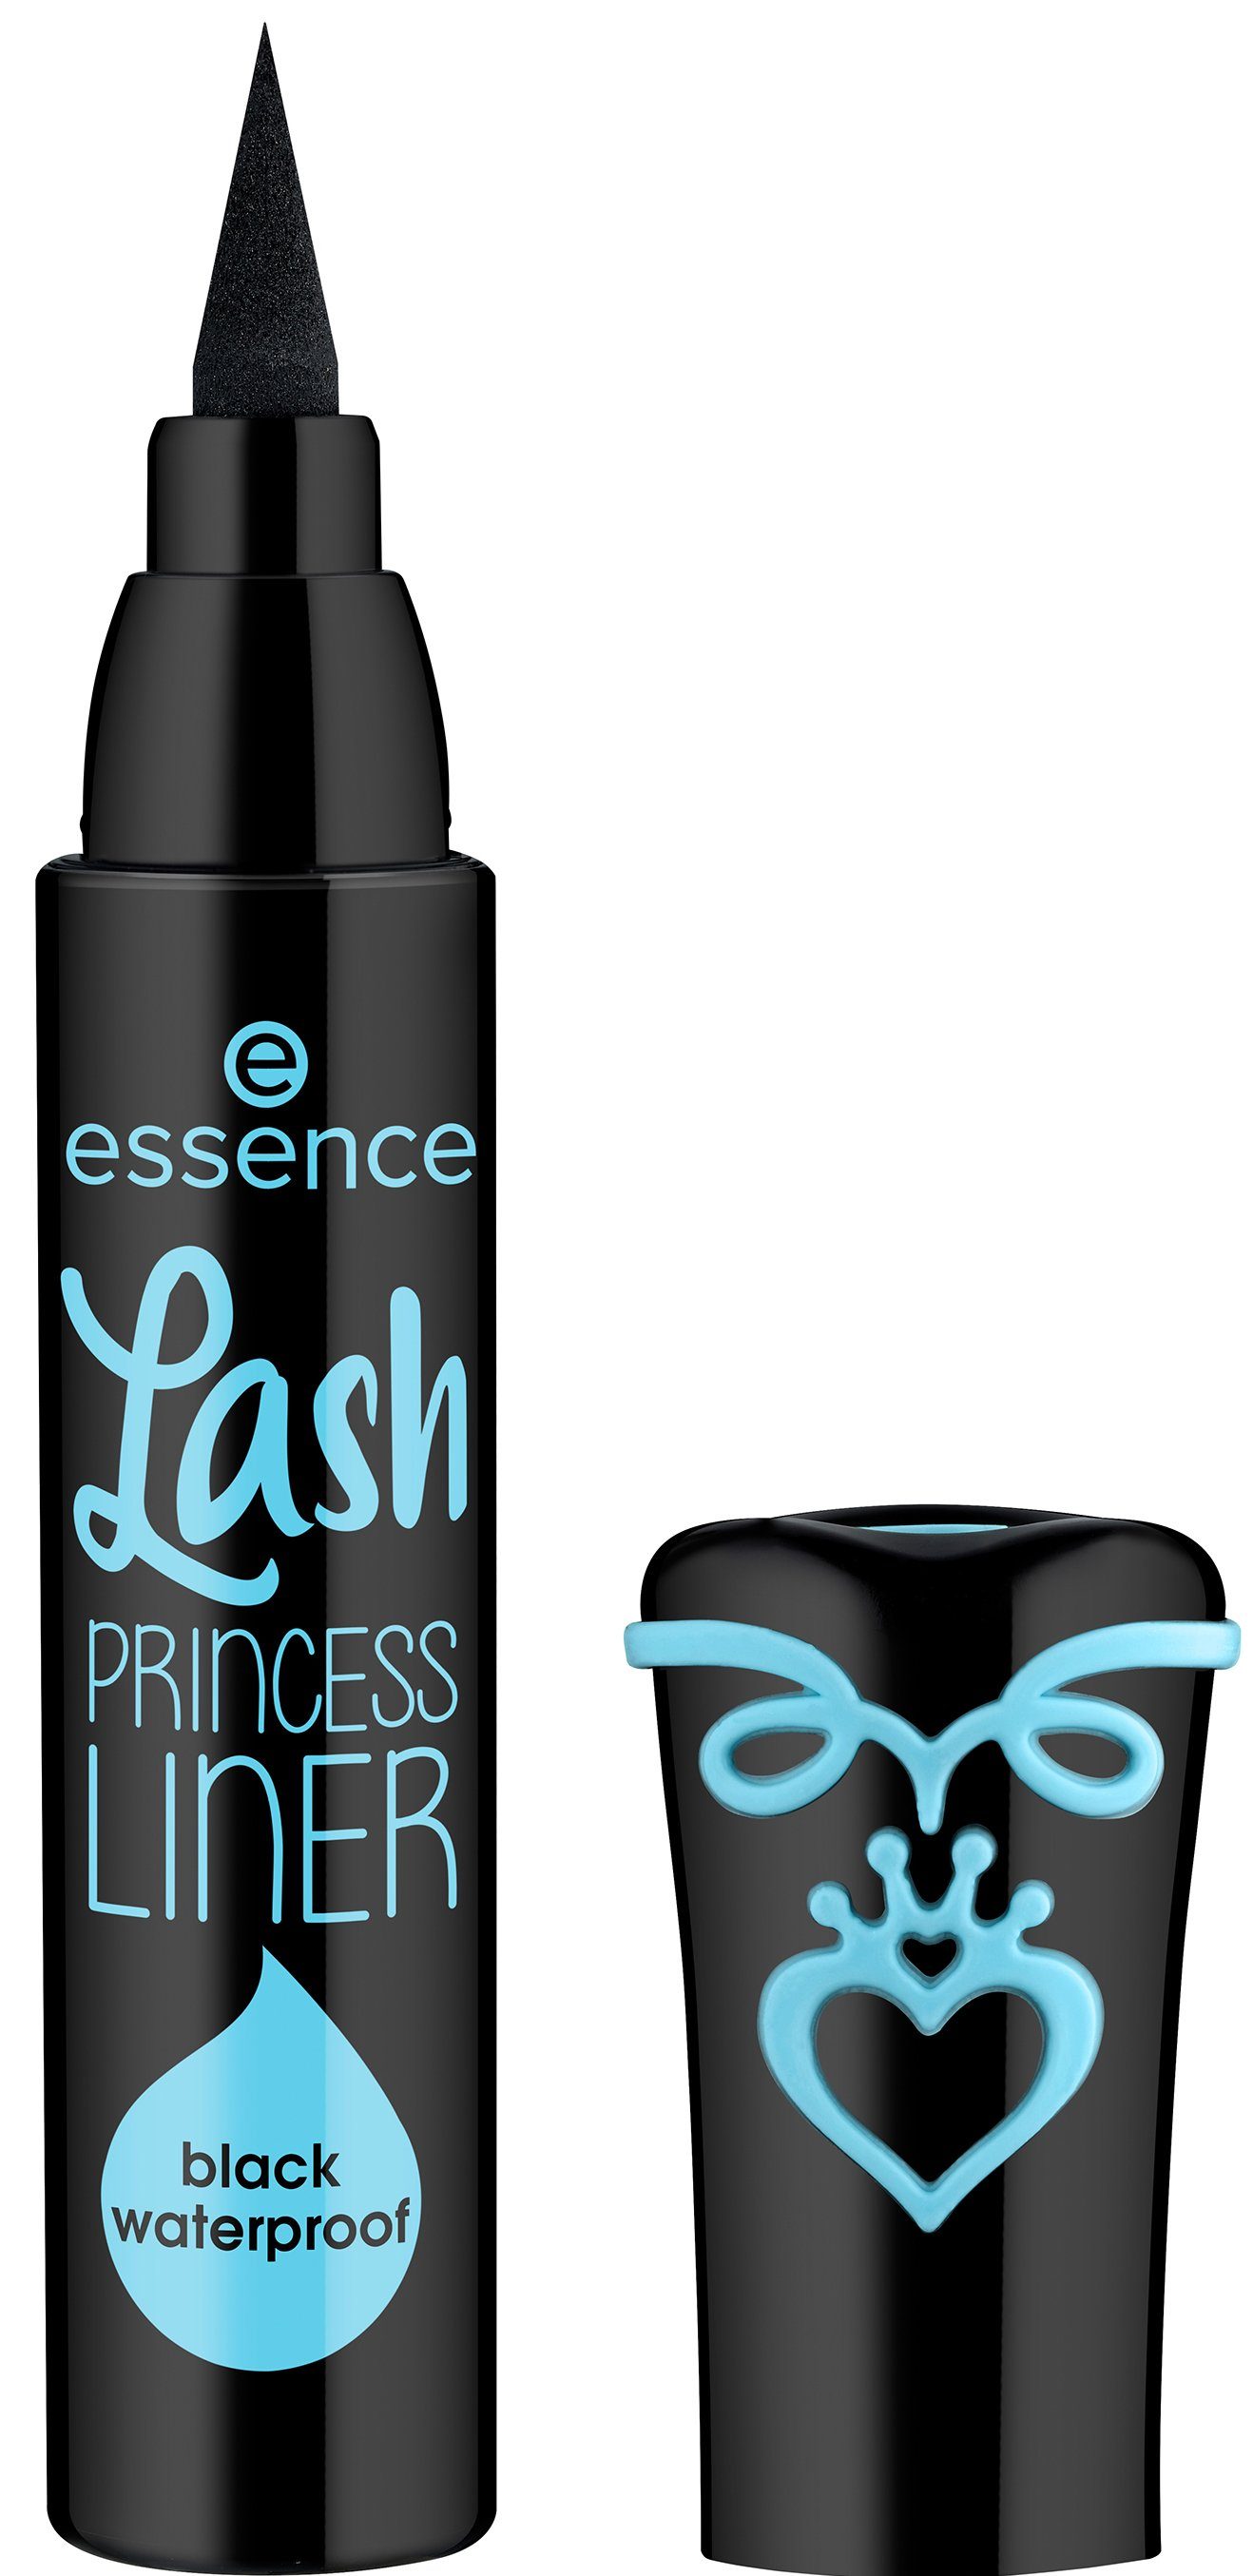 PRINCESS Eyeliner Lash 5-tlg. LINER waterproof, Essence black